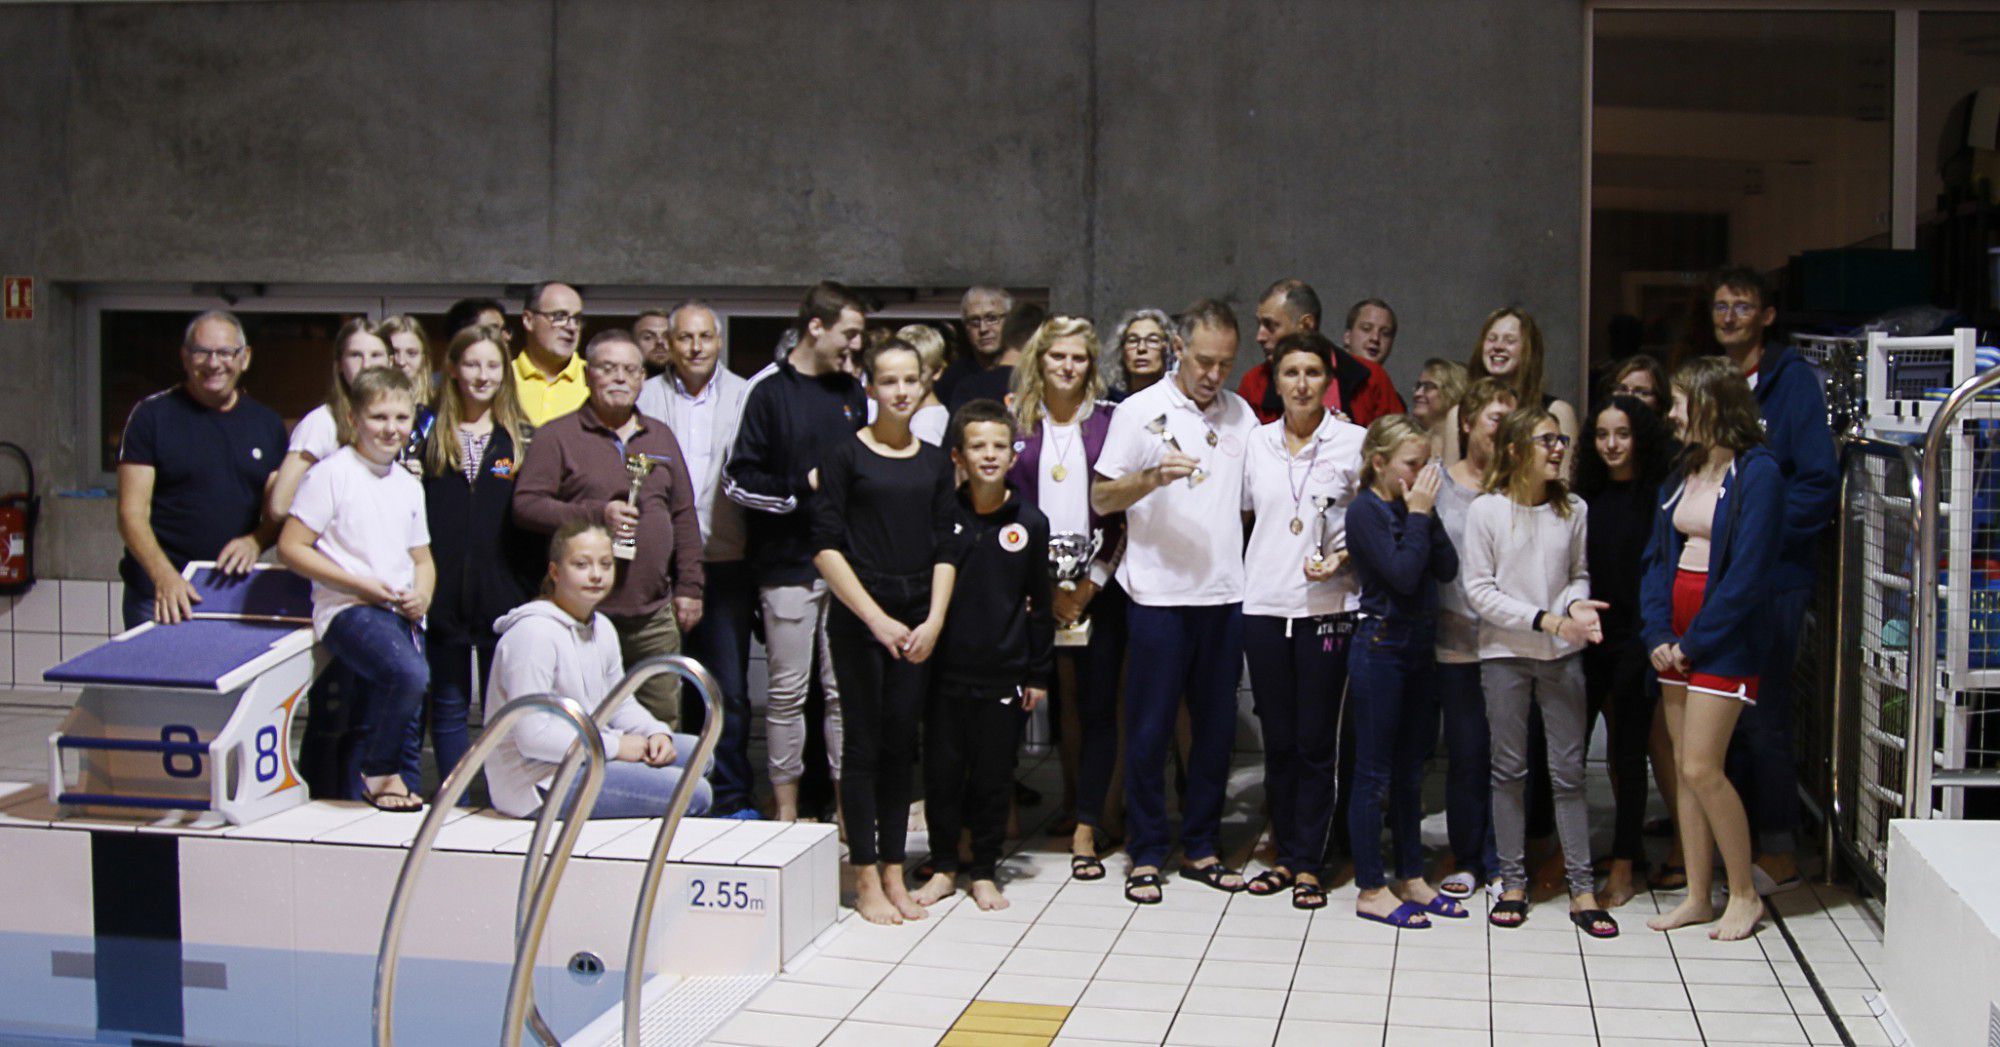 15 Teilnehmer der DLRG Holzwickede nahmen am Wochenende an einem Sechs-Stunden-Schwimmen teil: Das Foto zeigt die Holzwickeder mit ihren Gastgebern im Hallenbad der französischen Partnerstadt. (Foto: privat)